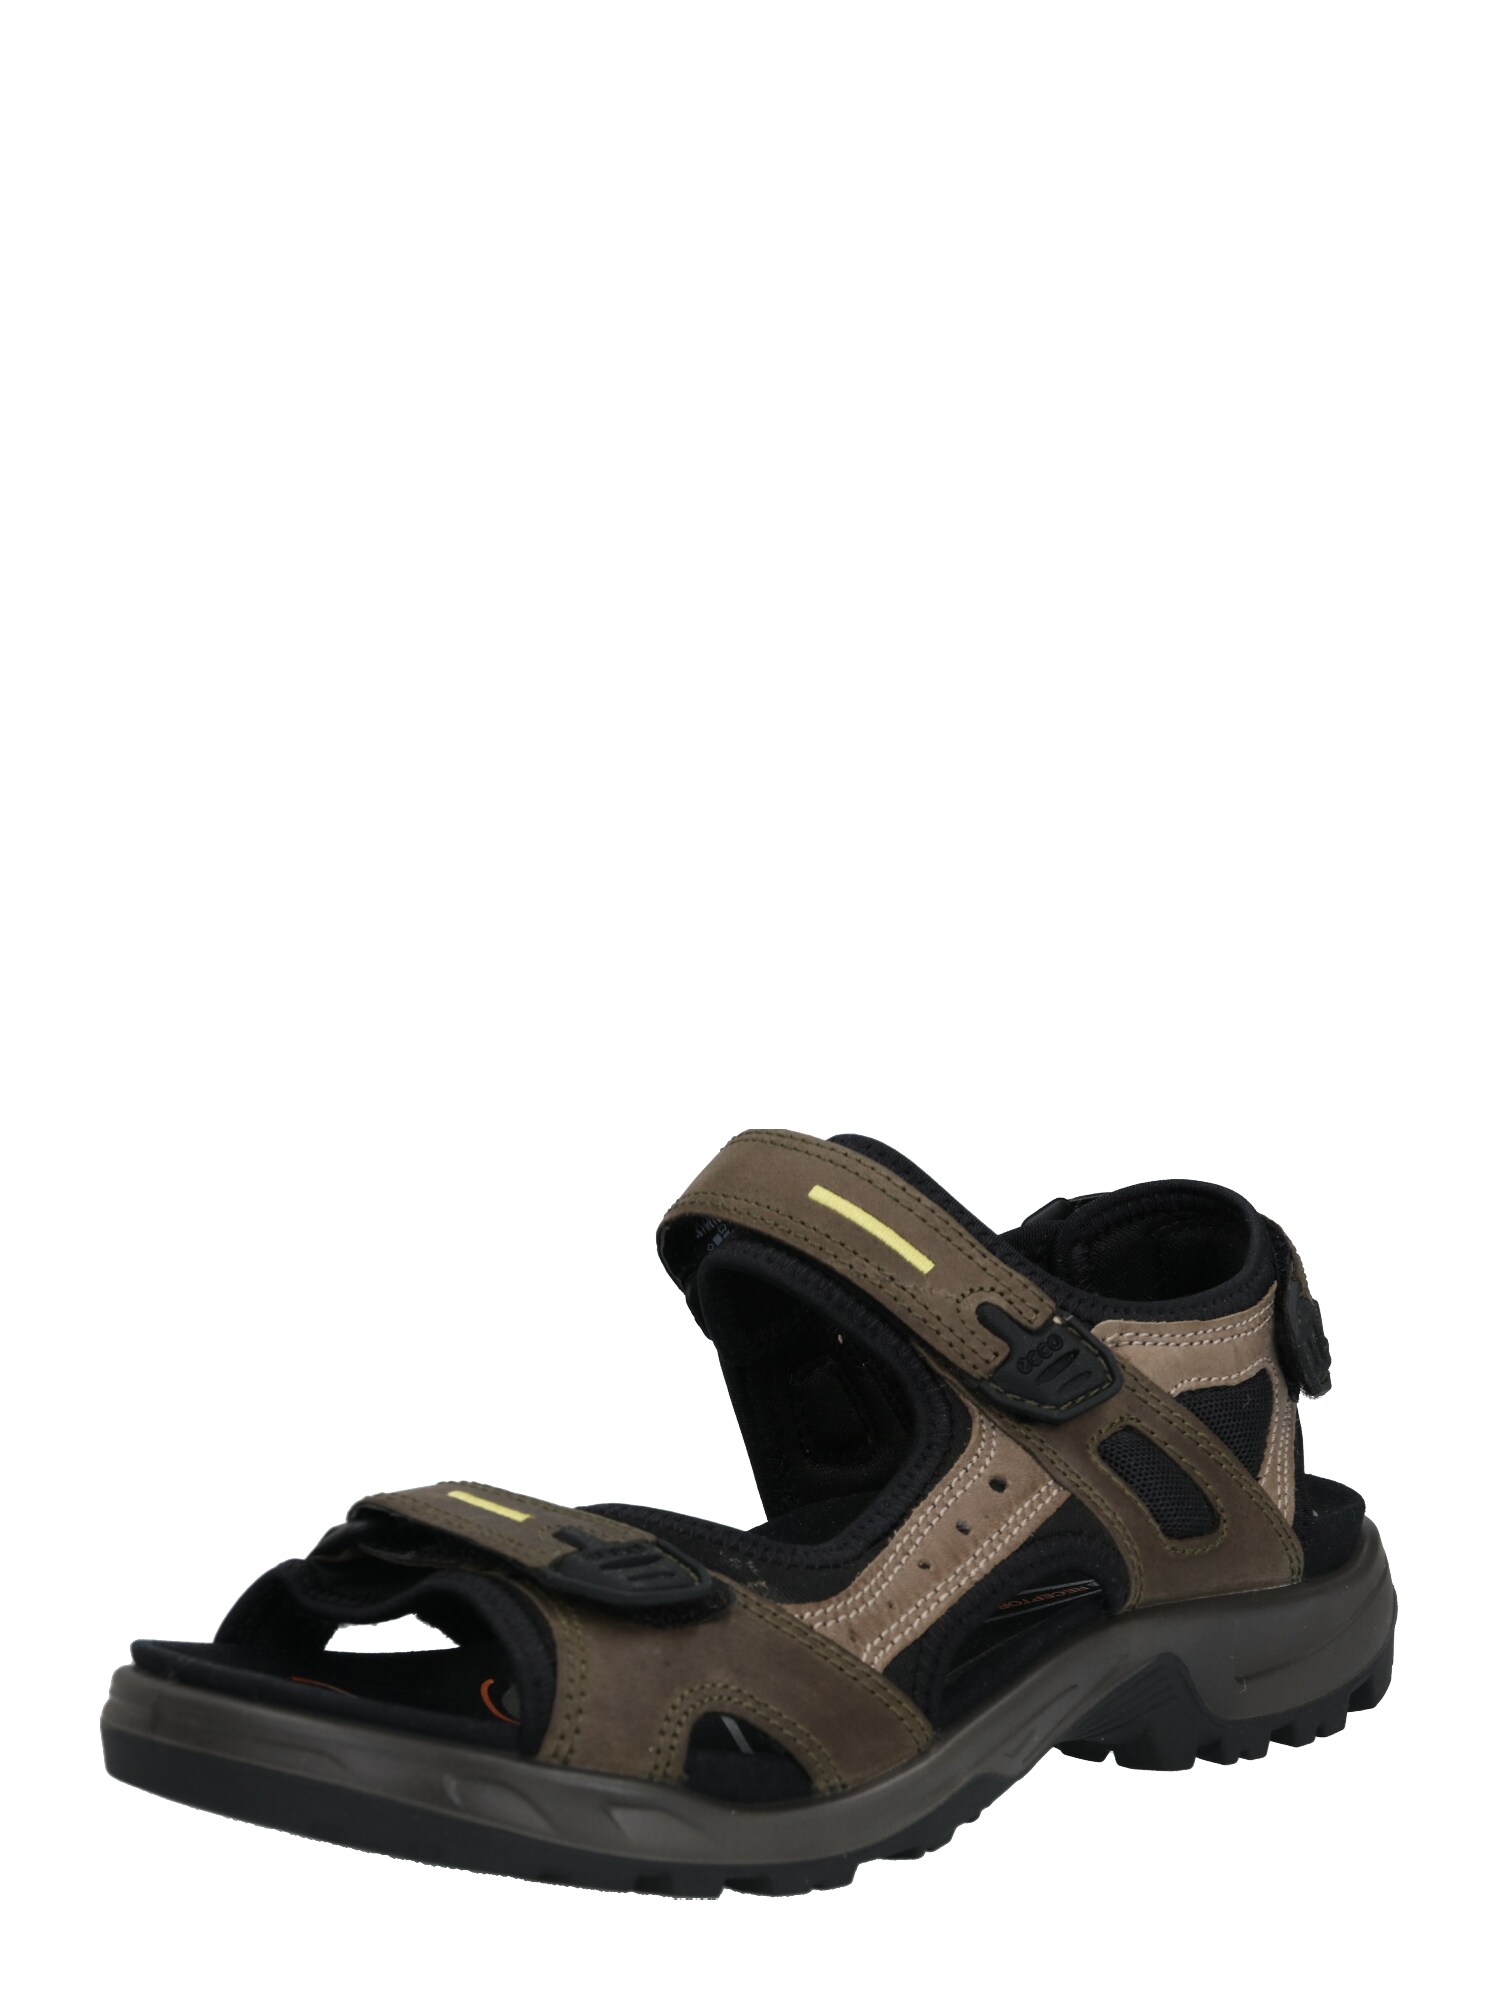 ECCO Sportinio tipo sandalai 'Offroad' purvo spalva / juoda